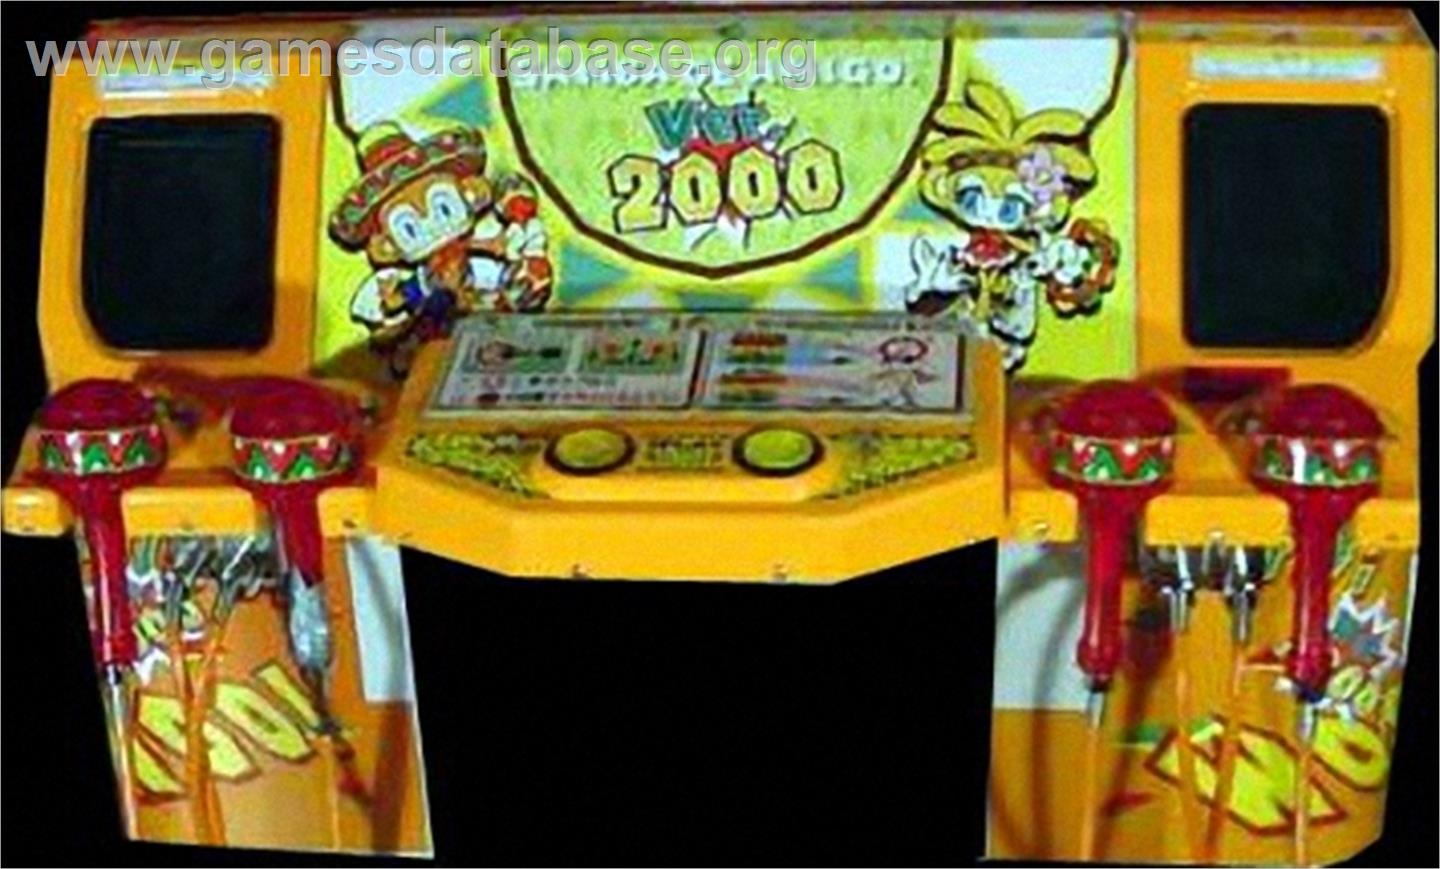 Samba de Amigo ver. 2000 - Arcade - Artwork - Control Panel